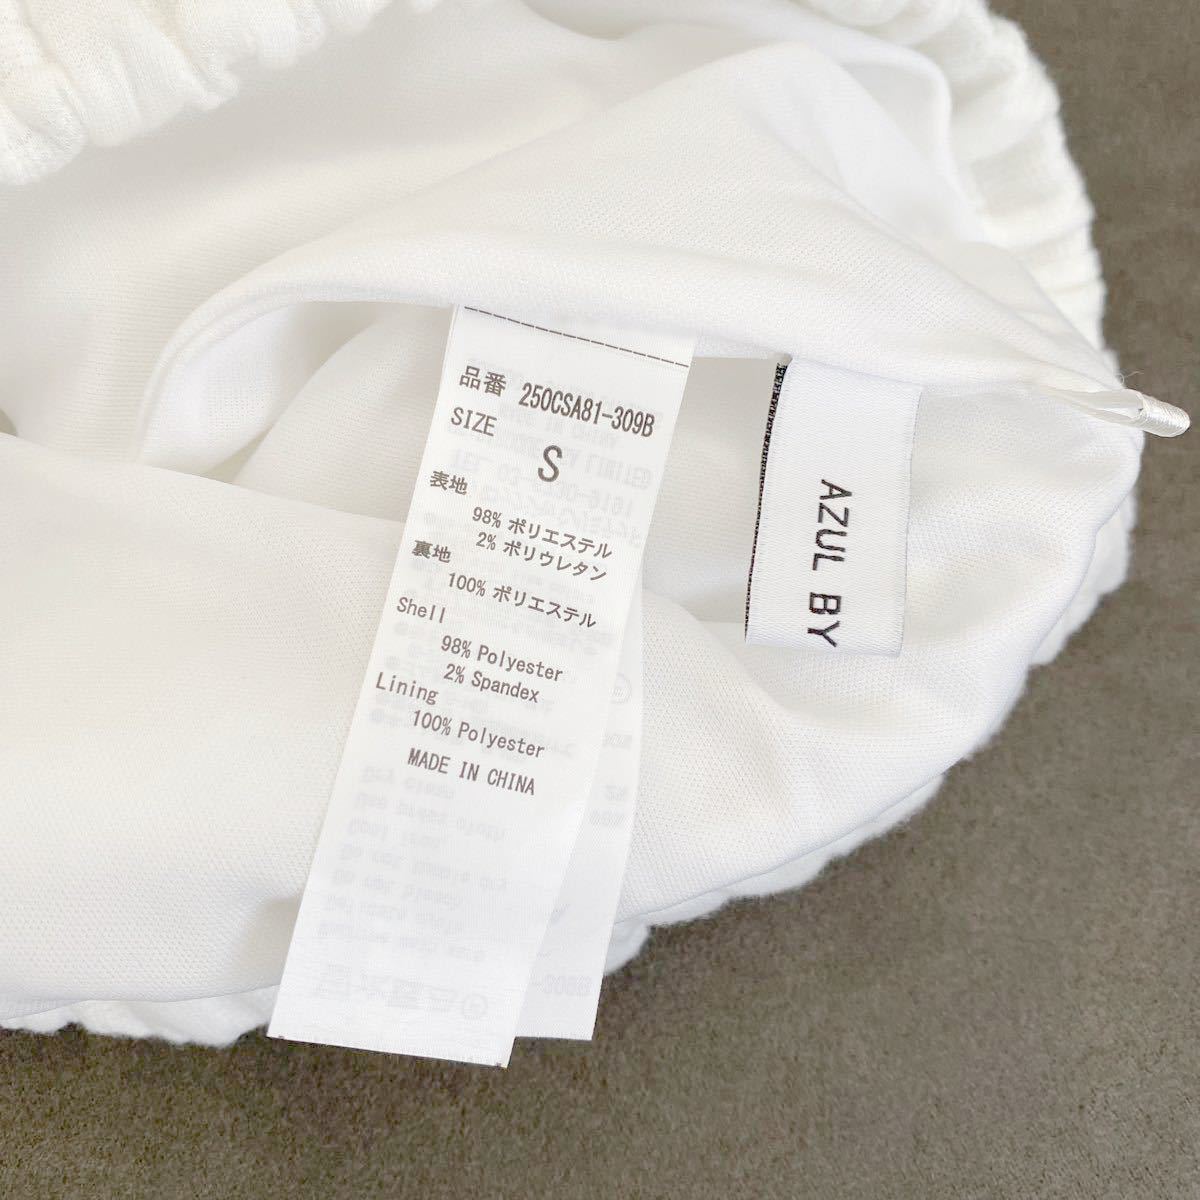 ［値下げ］新品 スカート フクレジャガード タイトミディスカート白　立体チェック柄　AZUL BY MOUSSY